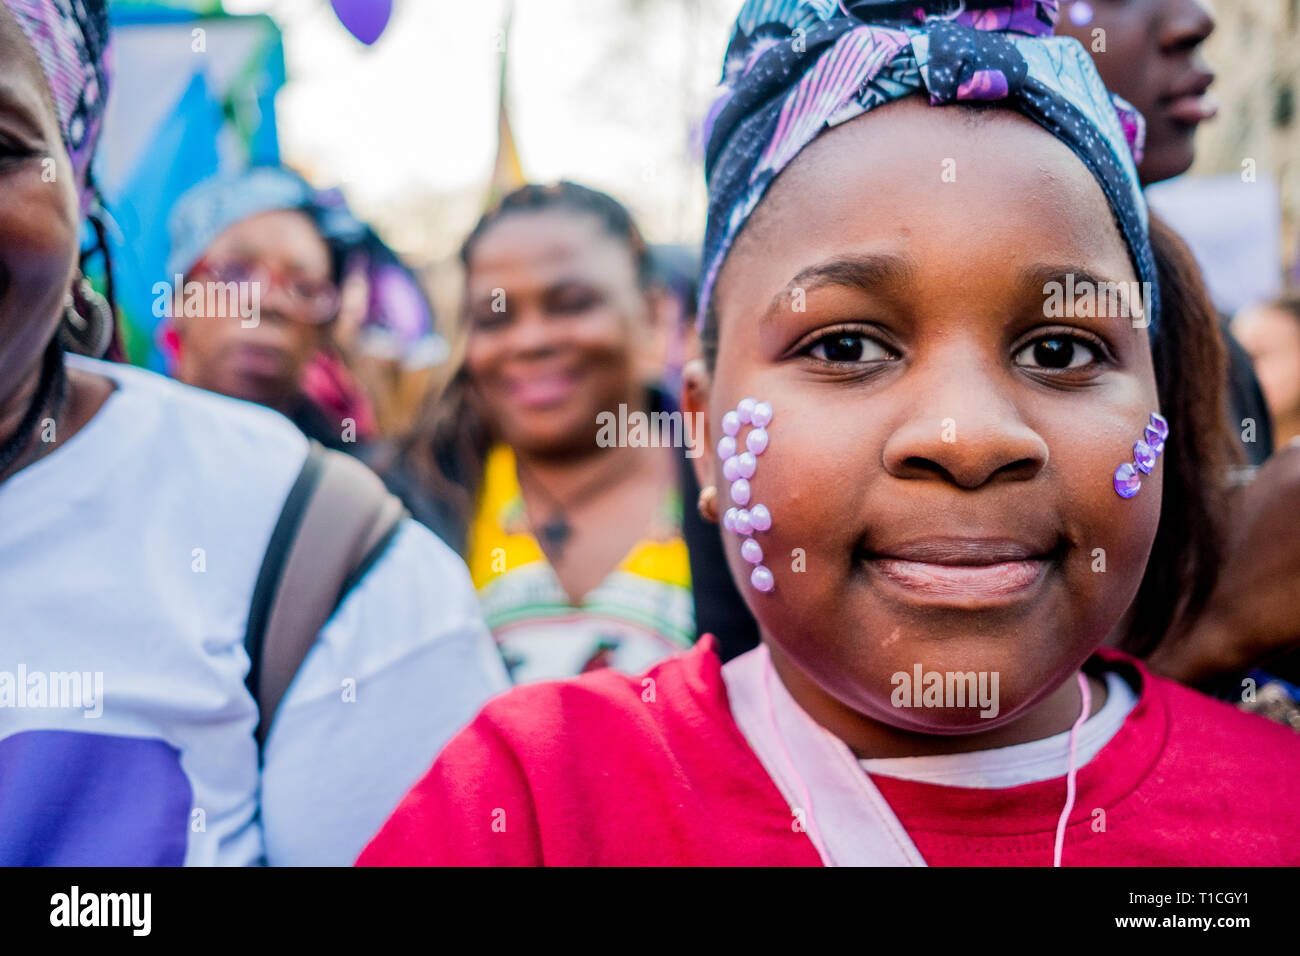 Barcelona, Spanien - 8. März 2019: jungen afrikanischen Mädchen Kundgebung im Zentrum der Stadt während der Frau Tag für die Menschenrechte besser für Frauen und Feminismus Stockfoto